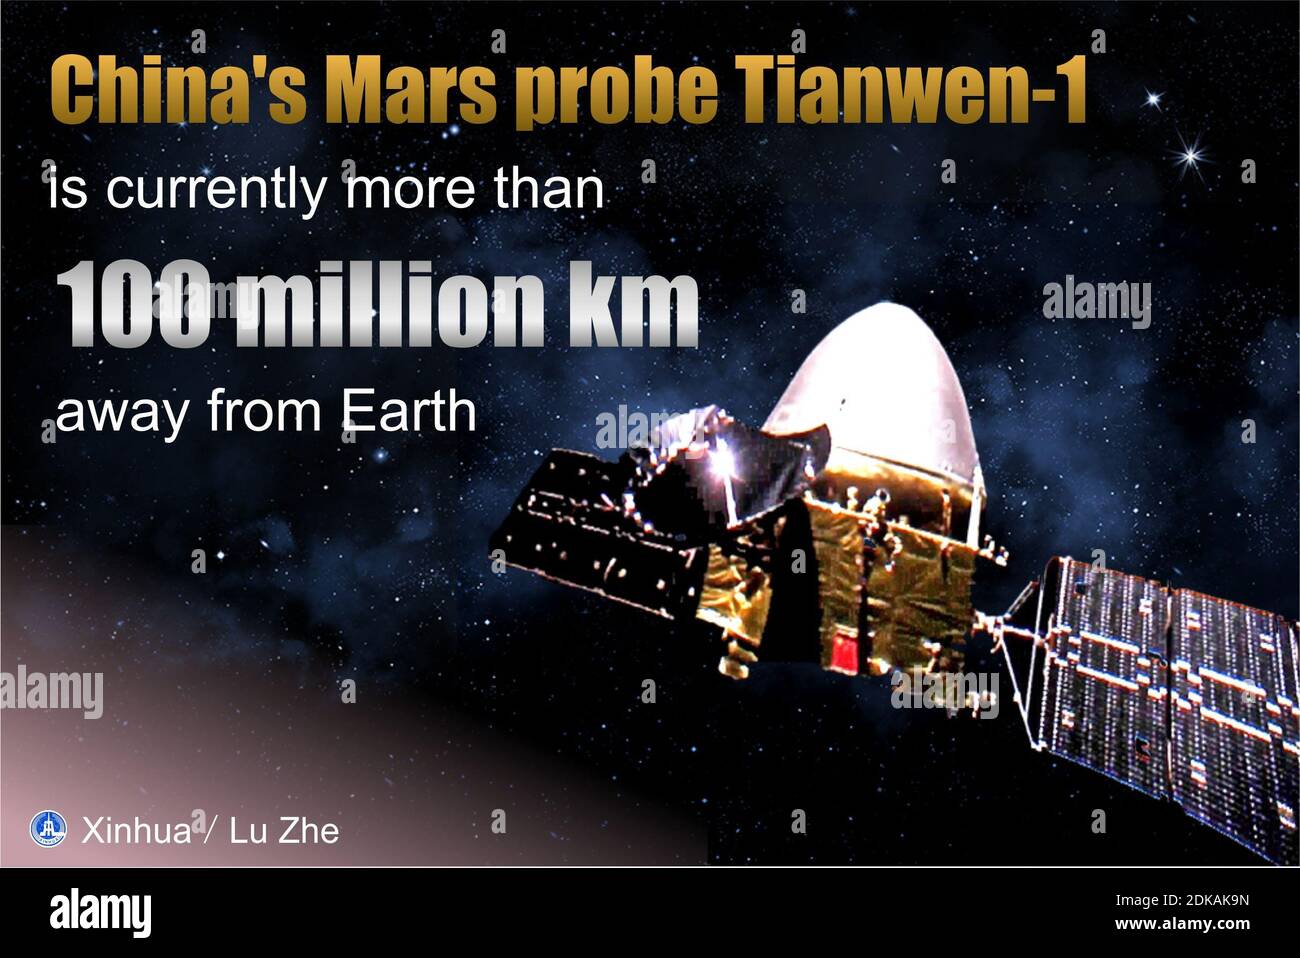 Peking, China. Dezember 2020. Chinas Mars-Sonde Tianwen-1 ist derzeit mehr als 100 Millionen Kilometer von der Erde entfernt und funktioniert normal, nach Angaben der China National Space Administration am Dienstag. Kredit: Lu Zhe/Xinhua/Alamy Live Nachrichten Stockfoto